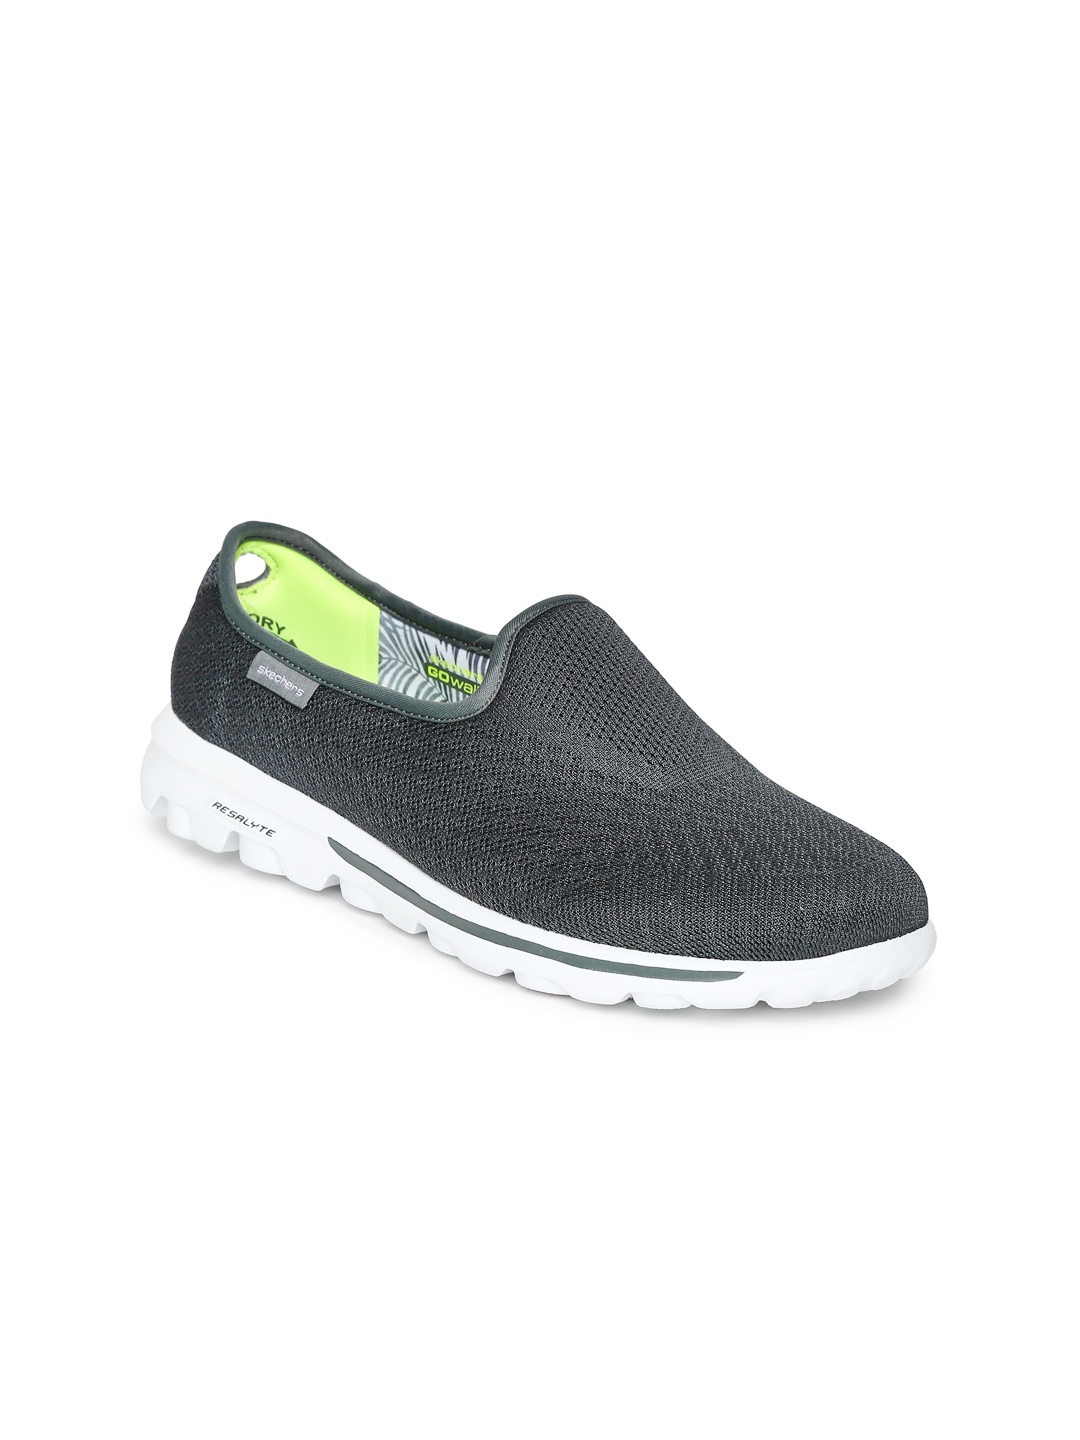 Myntra Skechers Women Grey Go Walking Shoes 686569 | Buy Myntra ...